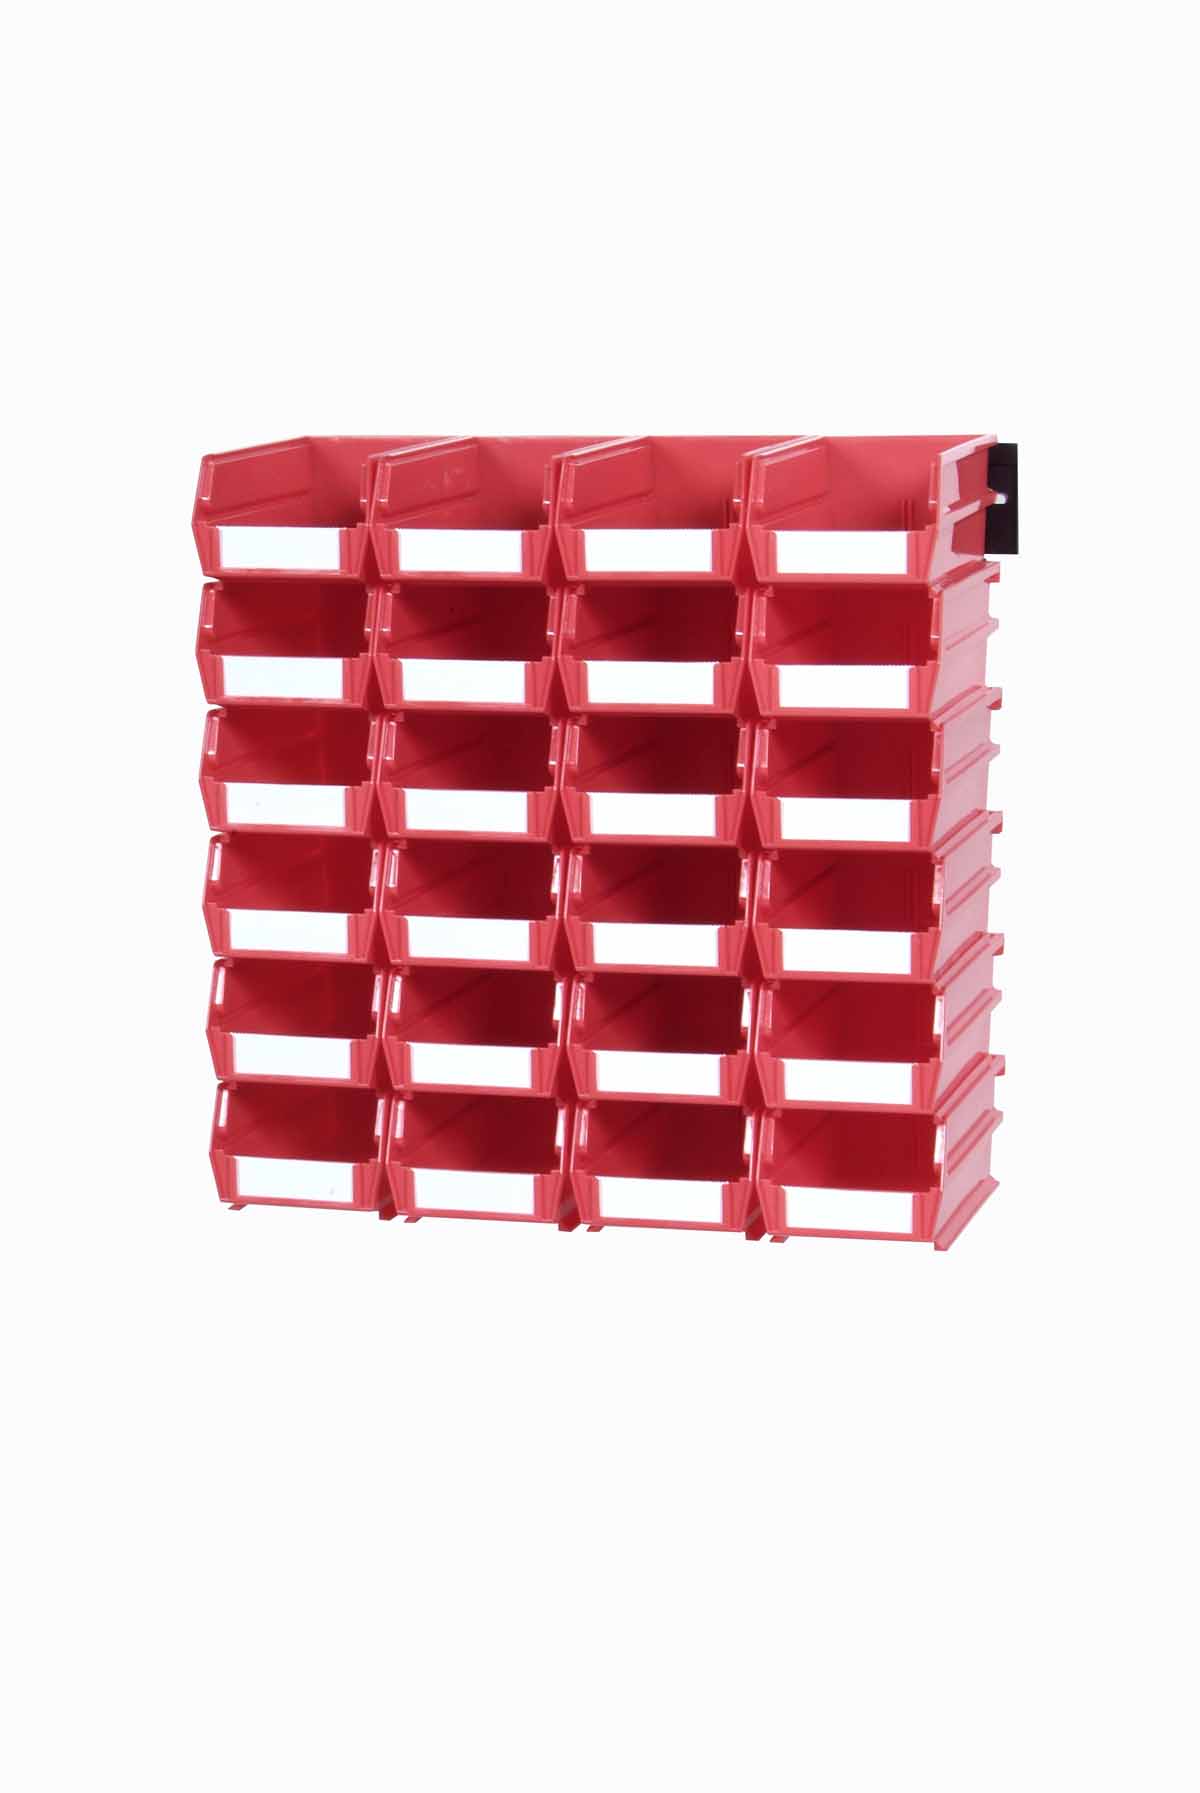 Triton Red 26 Pc Wall Storage Unit - Small